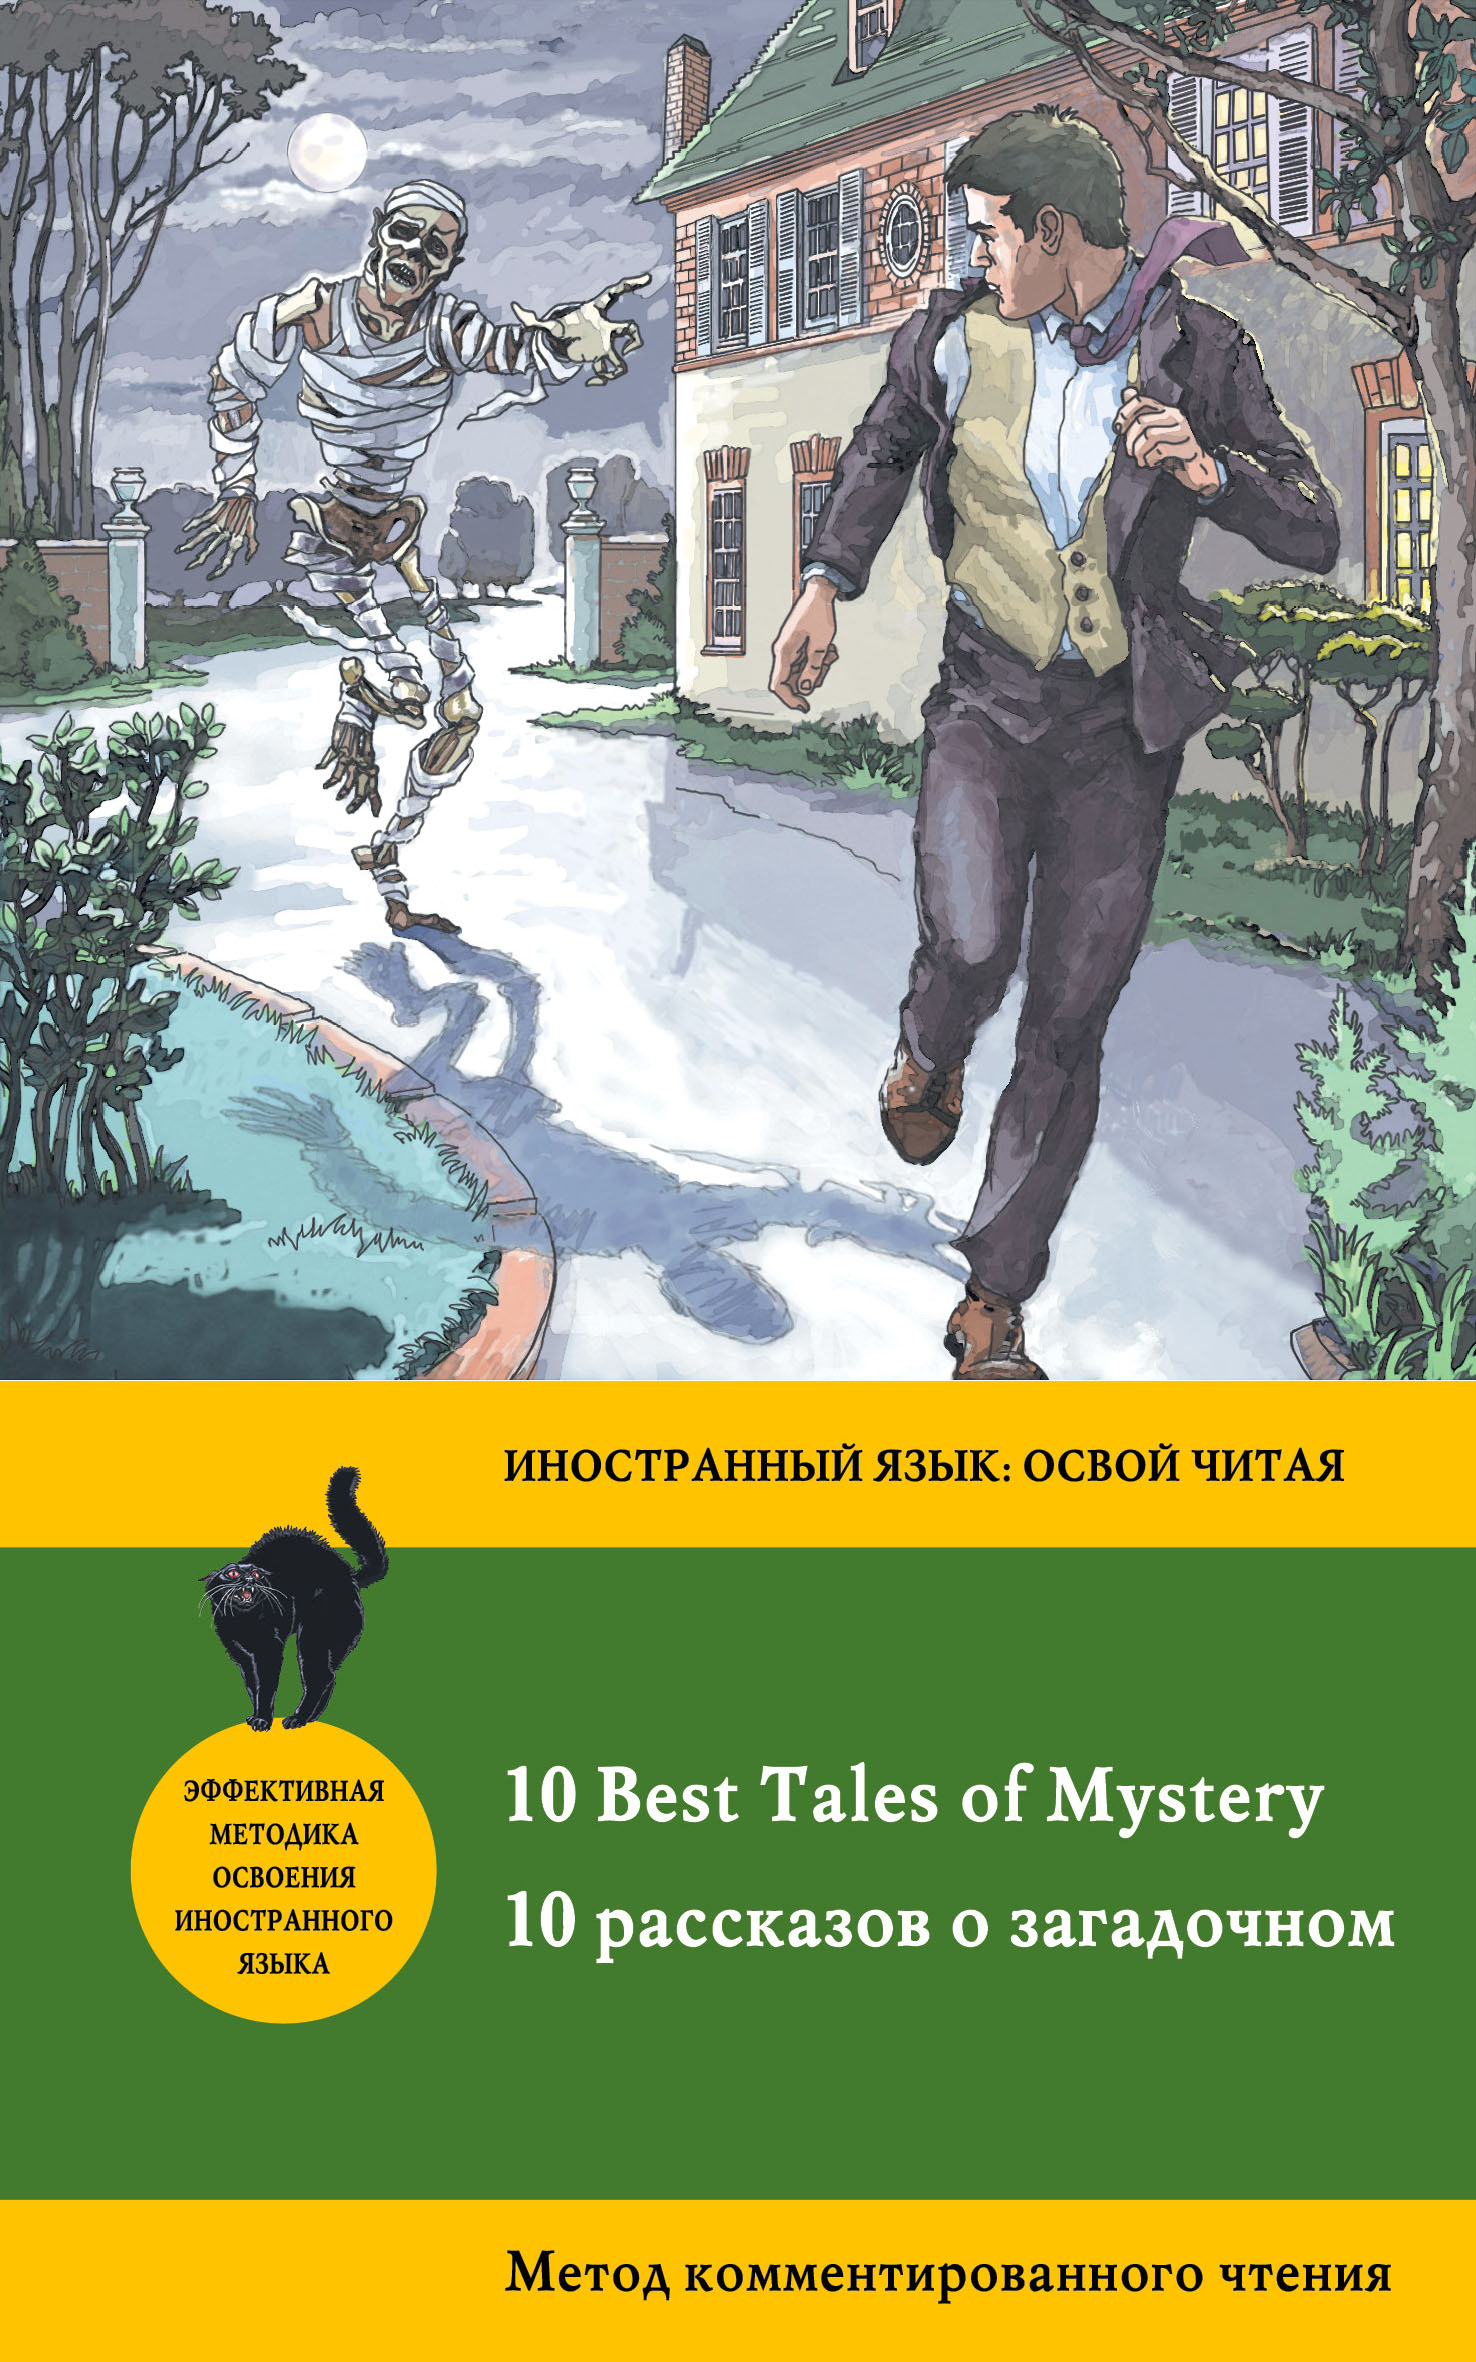 10рассказов о загадочном /10 Best Tales of Mystery. Метод комментированного чтения